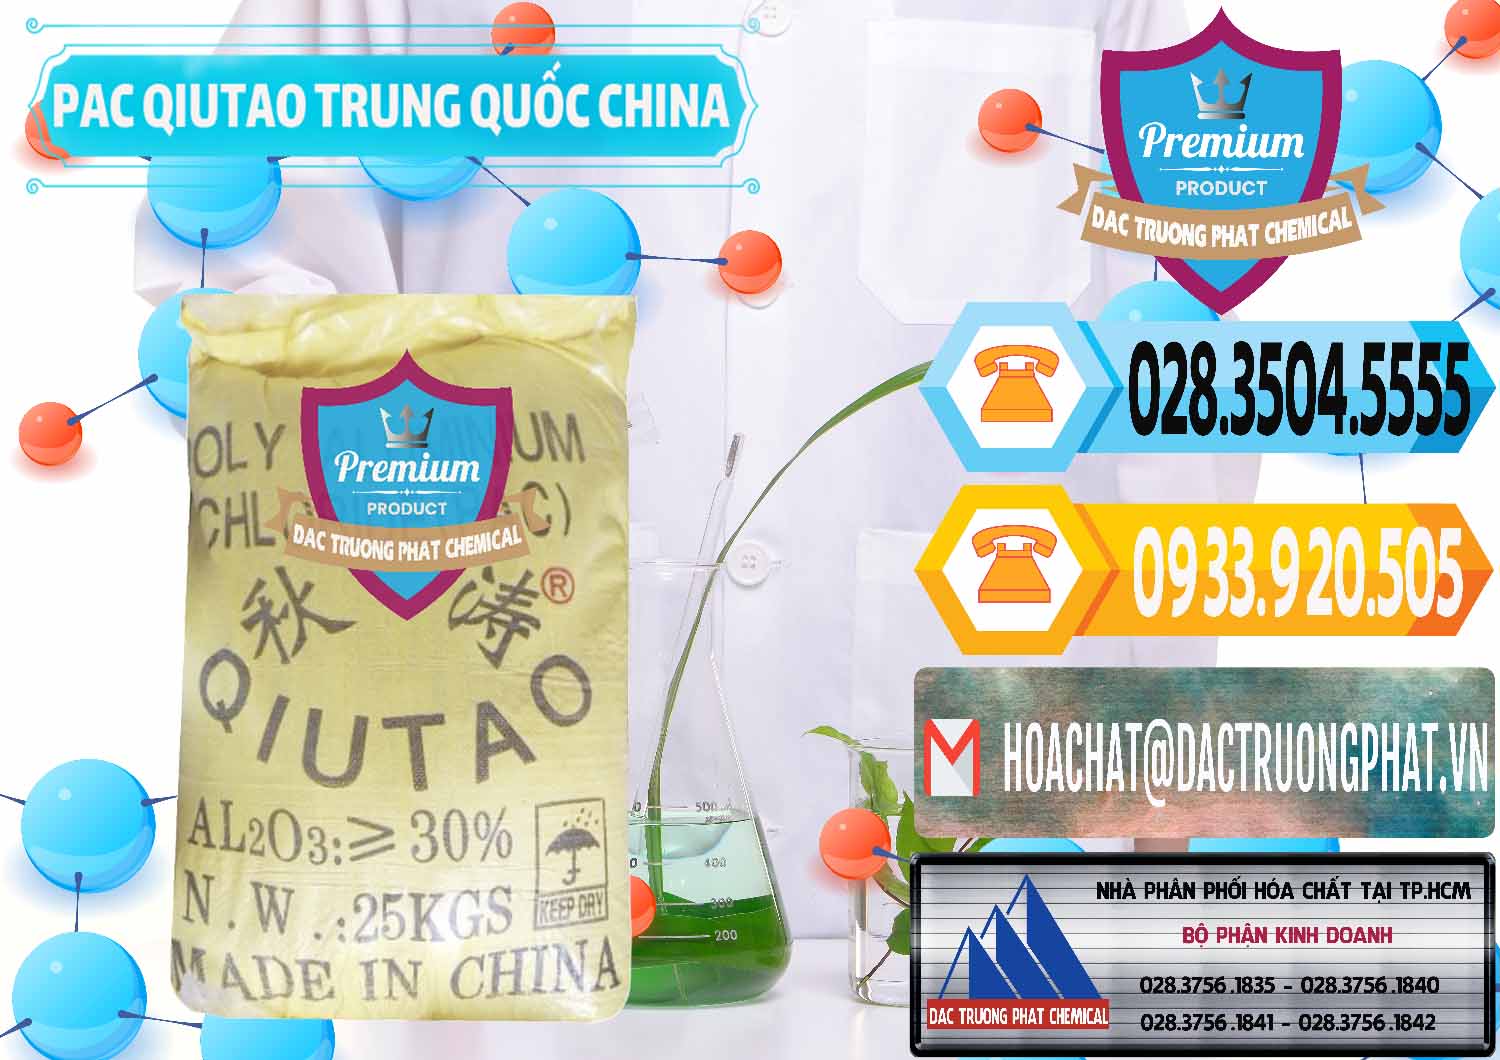 Chuyên phân phối và bán PAC - Polyaluminium Chloride Qiutao Trung Quốc China - 0267 - Đơn vị cung cấp và phân phối hóa chất tại TP.HCM - hoachattayrua.net